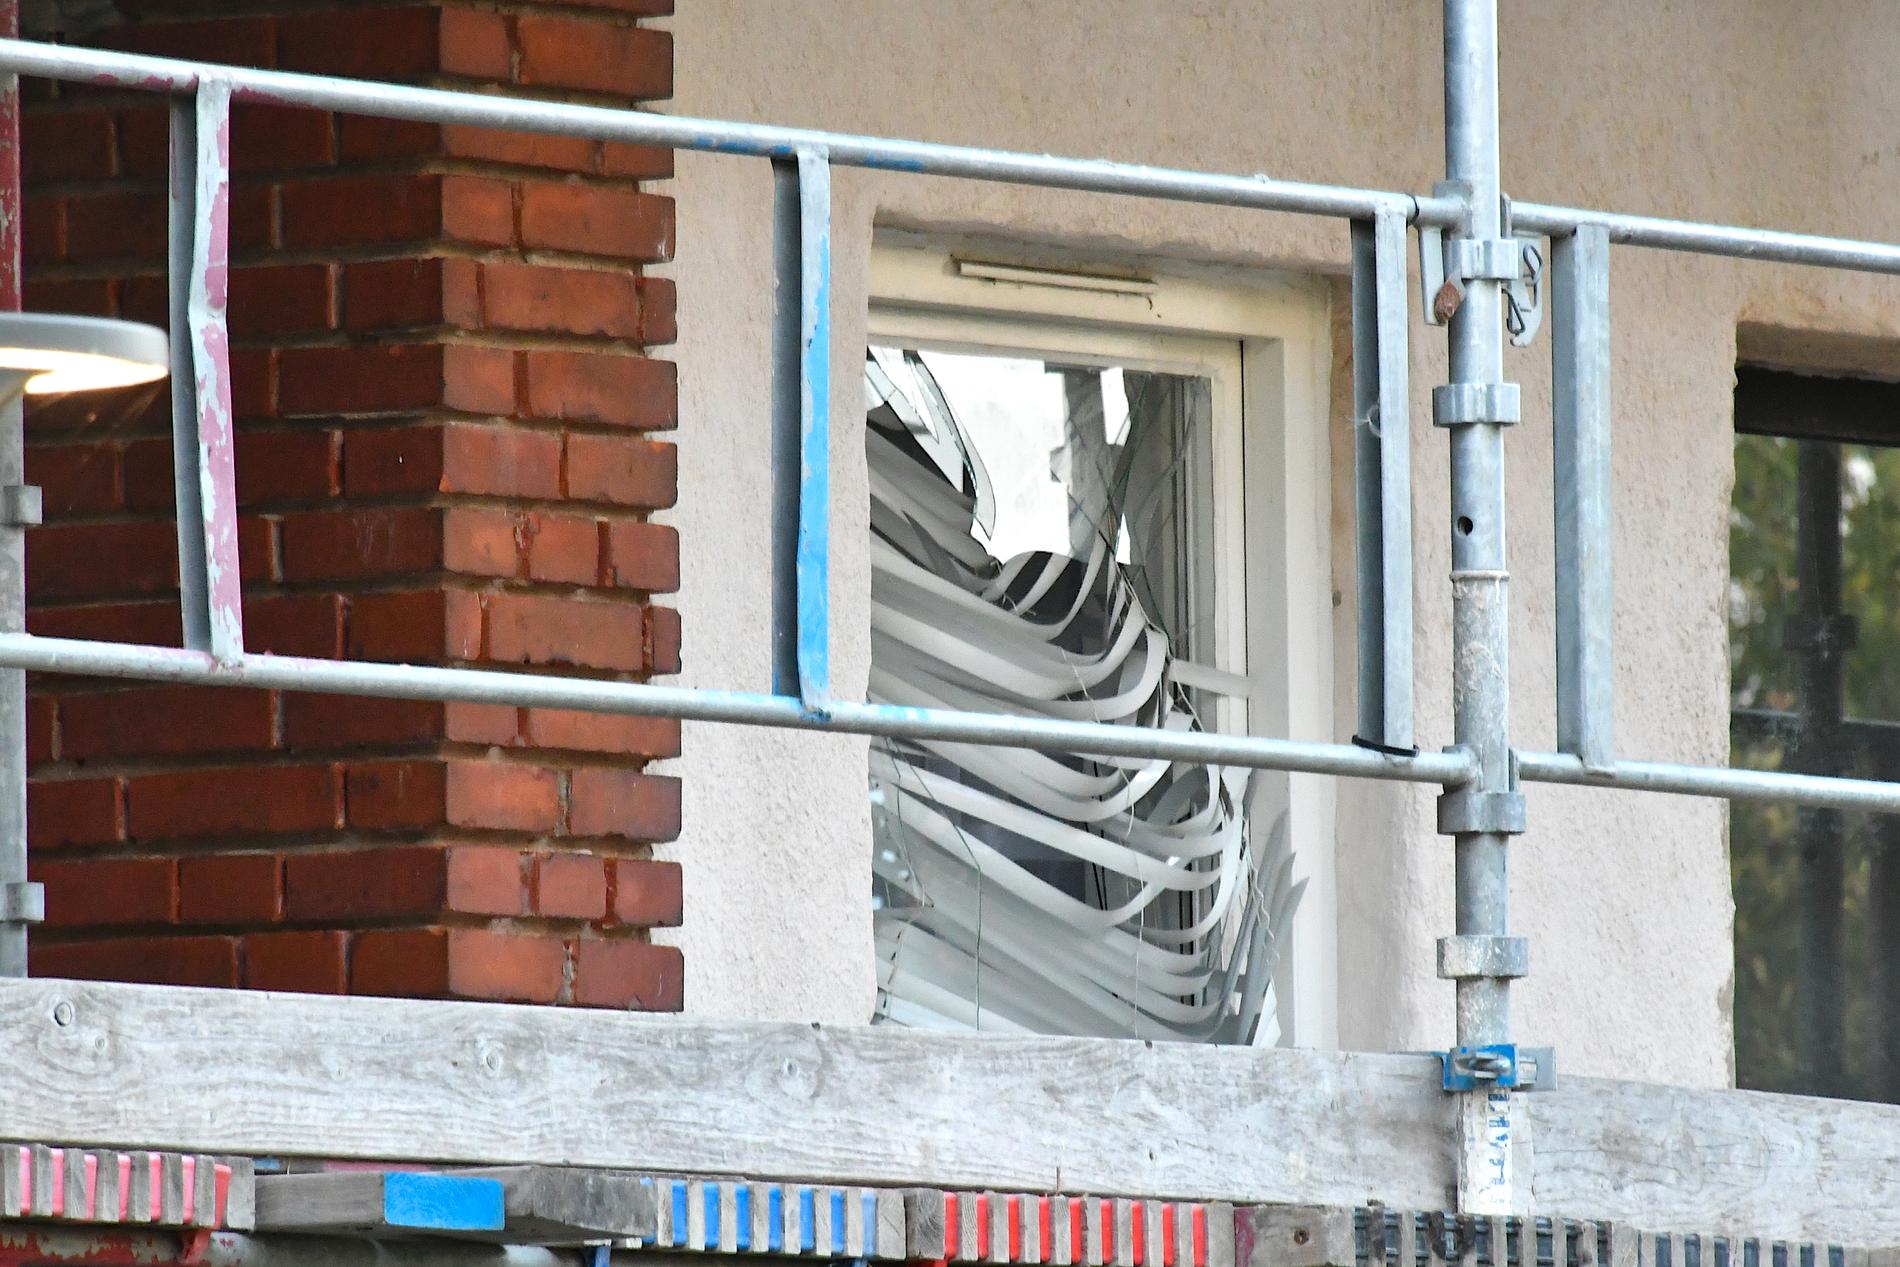 På måndagskvällen larmades polisen om en skottlossning i Landskrona. Senare under natten kastade någon in ett explosivt föremål i en lägenhet i närheten.